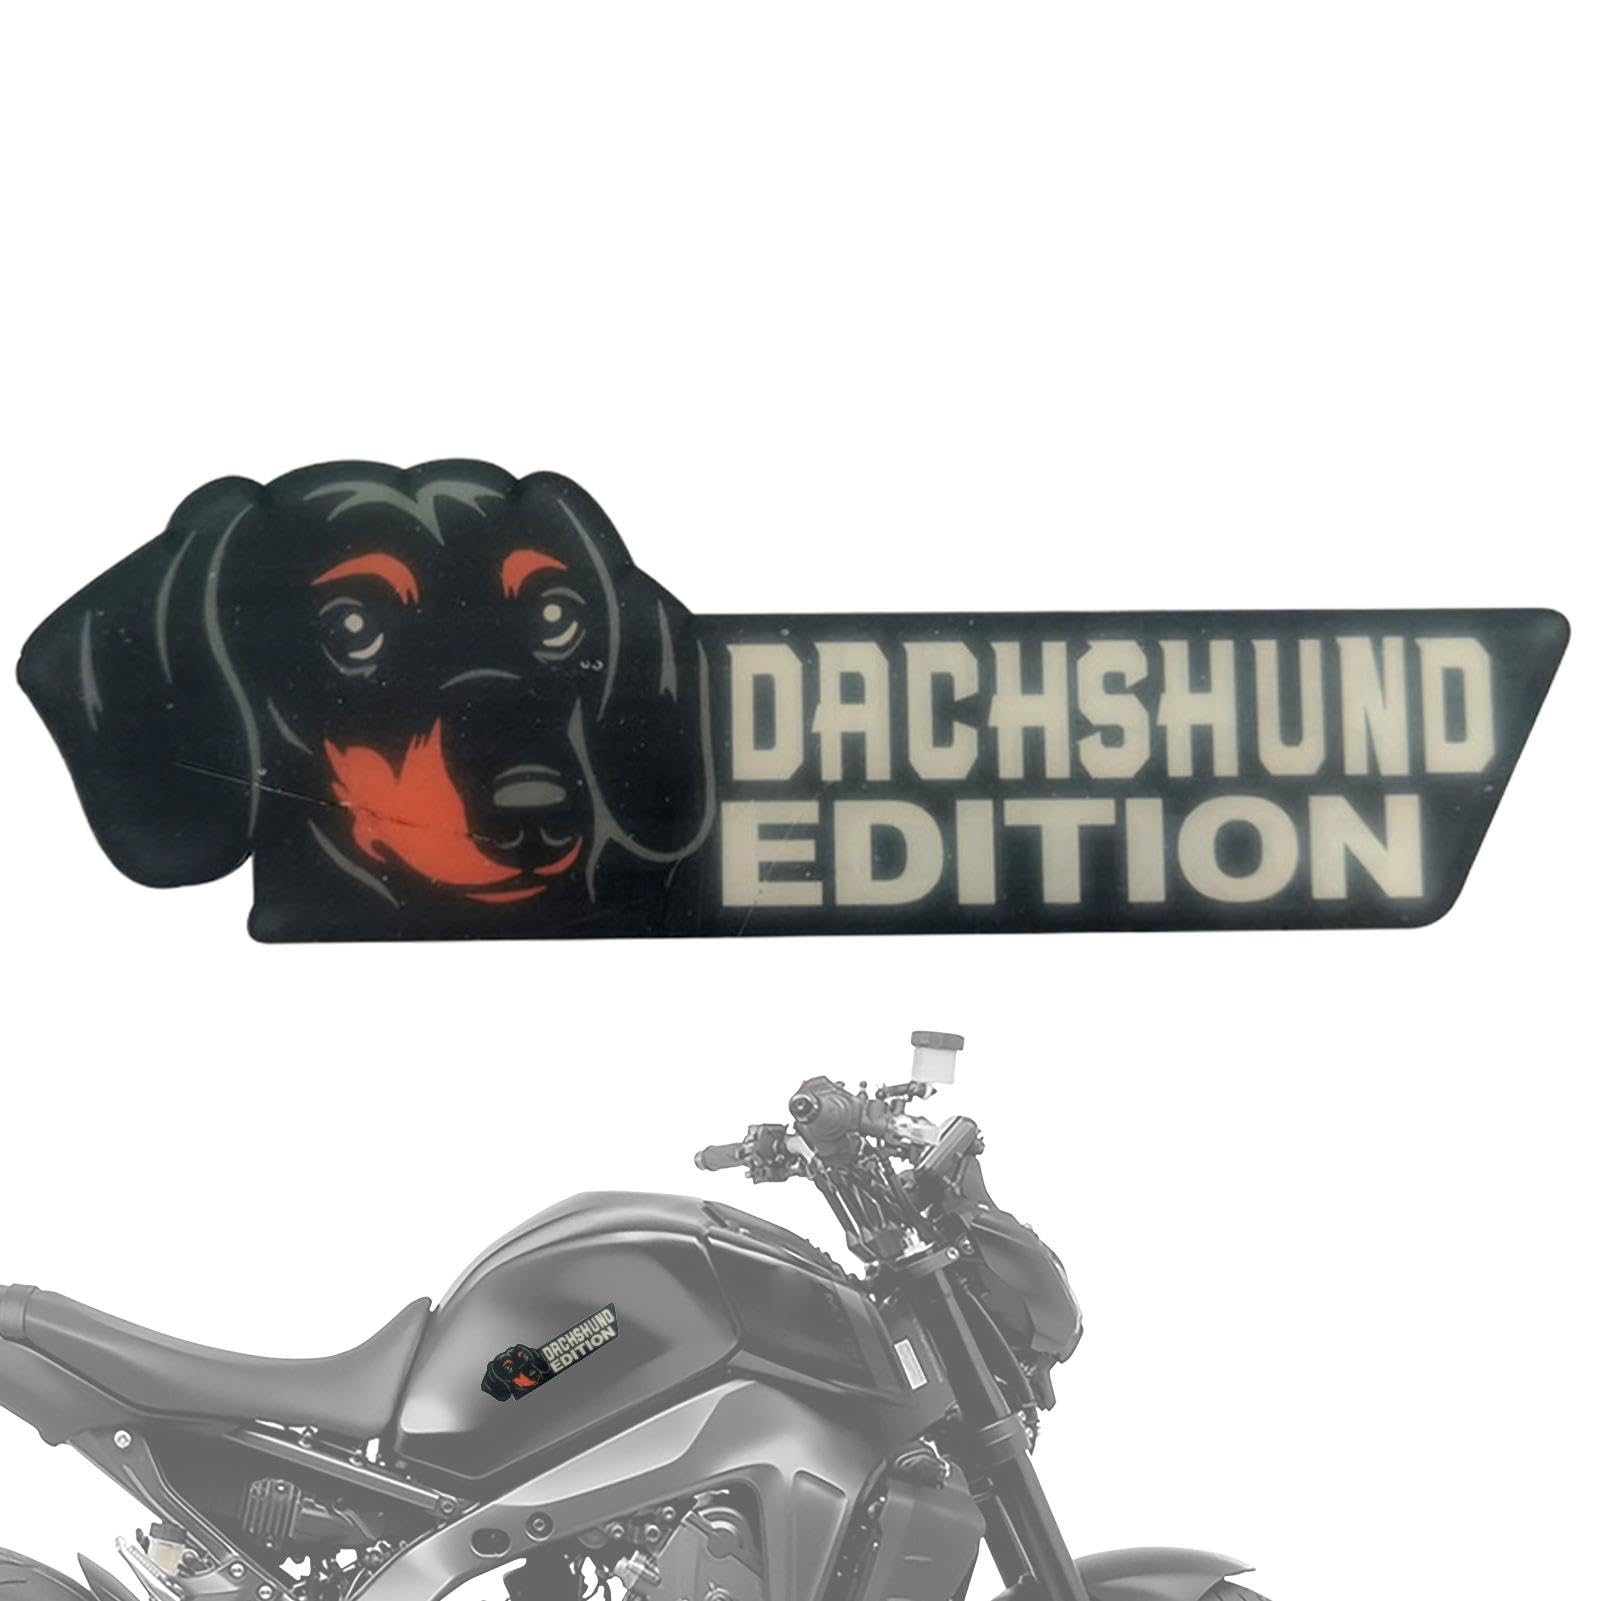 Voihamy Hundeaufkleber für Autos, 3D-Hundeabzeichen,Lustiges Hunde-Abzeichen-Auto-Emblem für Auto - 3D-Hunde-Autoabzeichen-Aufkleber, lustiges Hundeabzeichen-Autoemblem für Auto, LKW, Wohnmob, von Voihamy